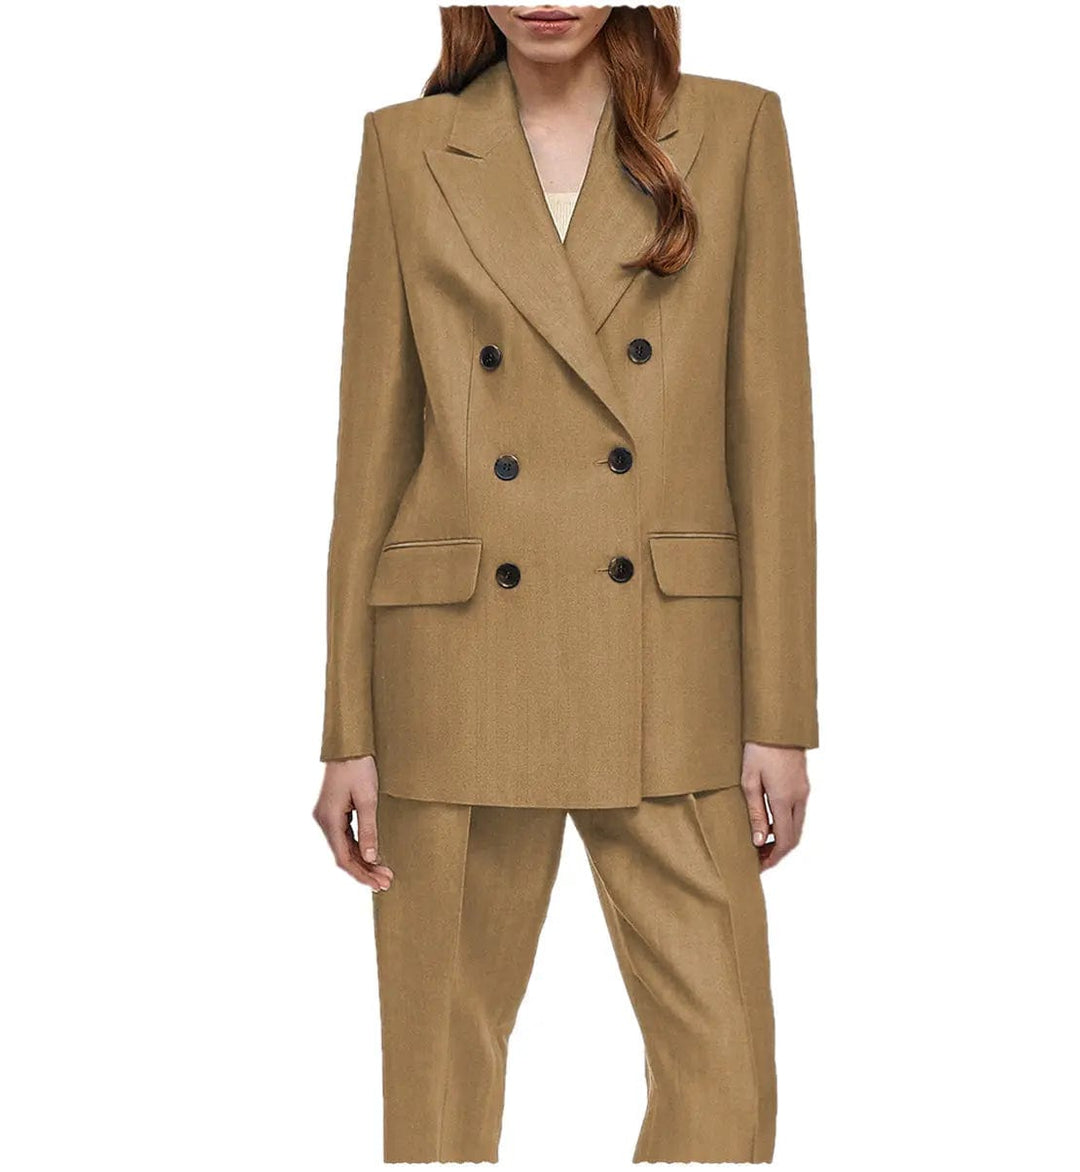 solovedress Formal Flat Peak Lapel 2 Pieces Suit Women (Blazer+Pants)